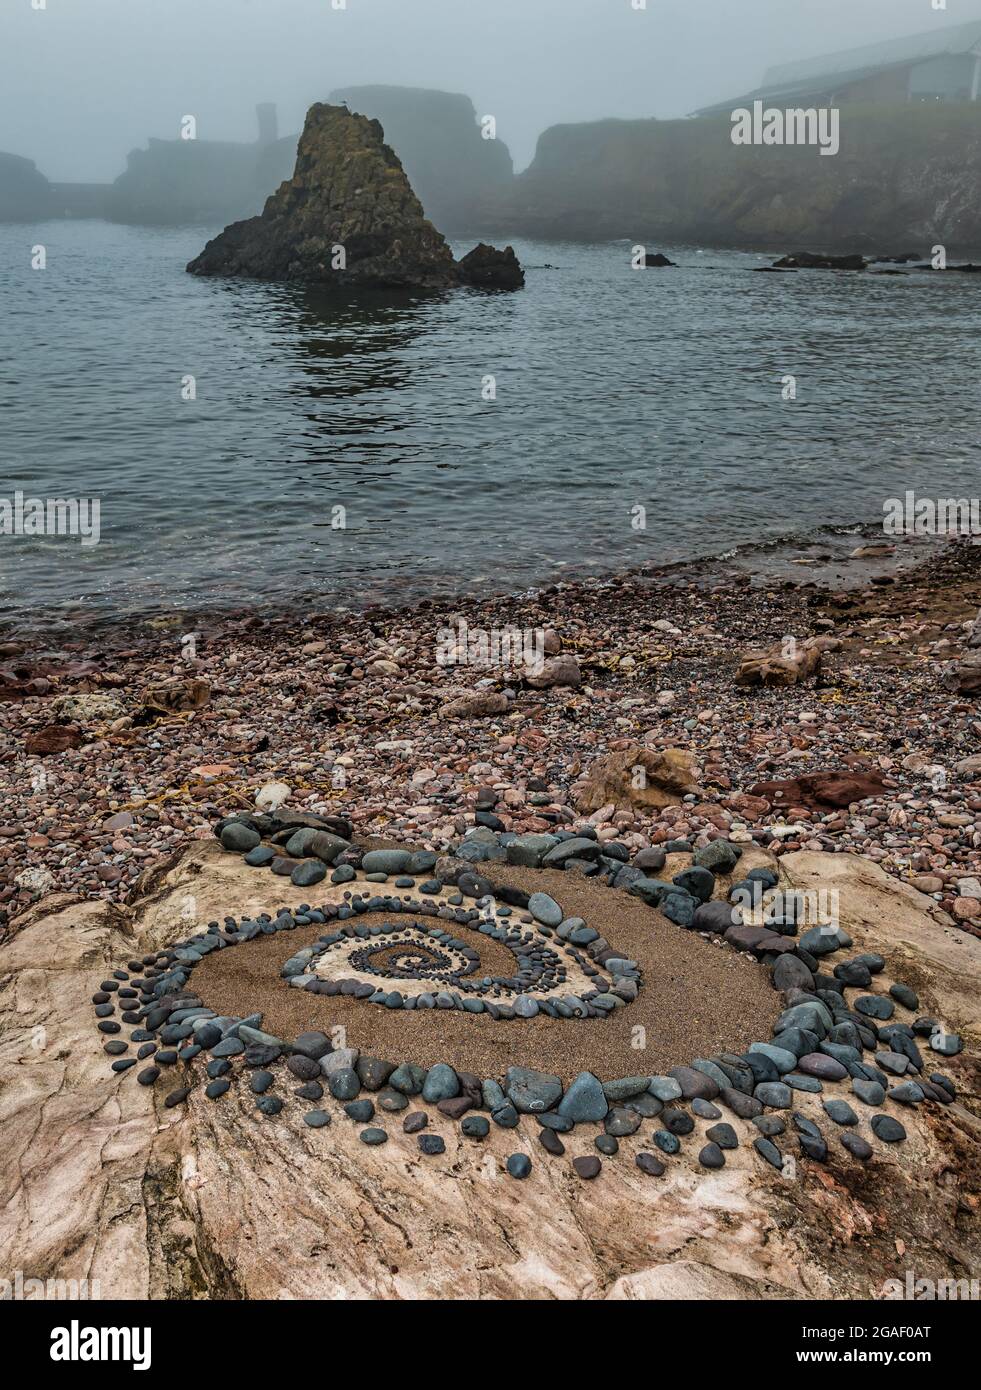 Sculpture en pierre ou en pierre, motif en spirale sur la plage avec une pile de mer le jour de la brume, Dunbar, East Lothian, Écosse, Royaume-Uni Banque D'Images